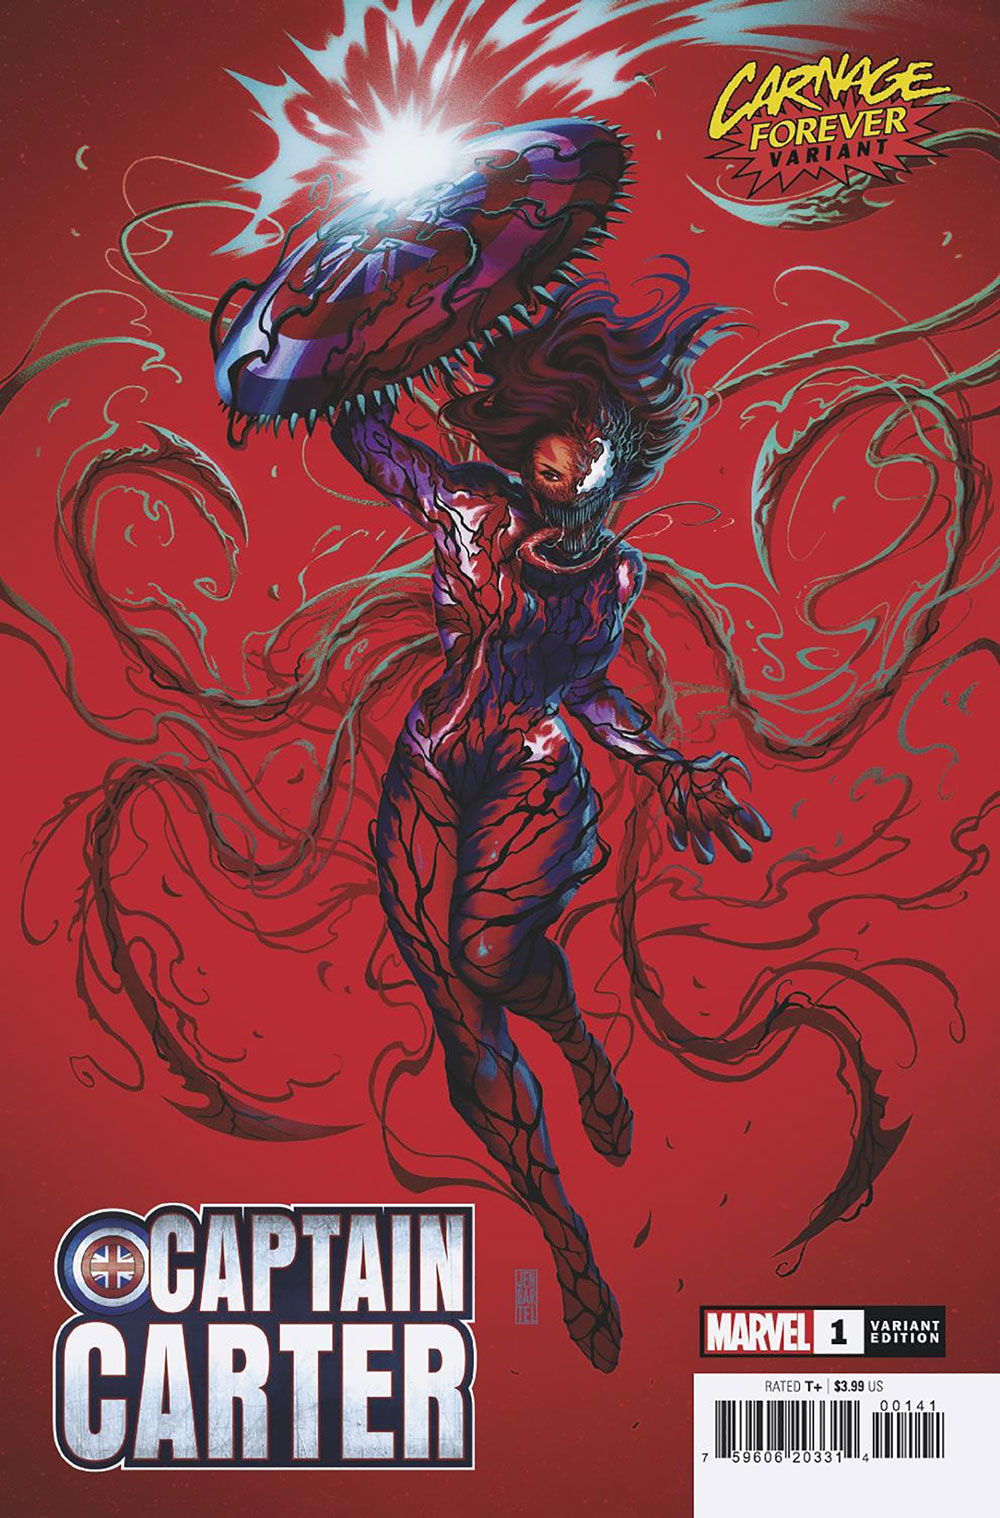 Captain Carter #1 Bartel Carnage Forever Variant (Of 5)